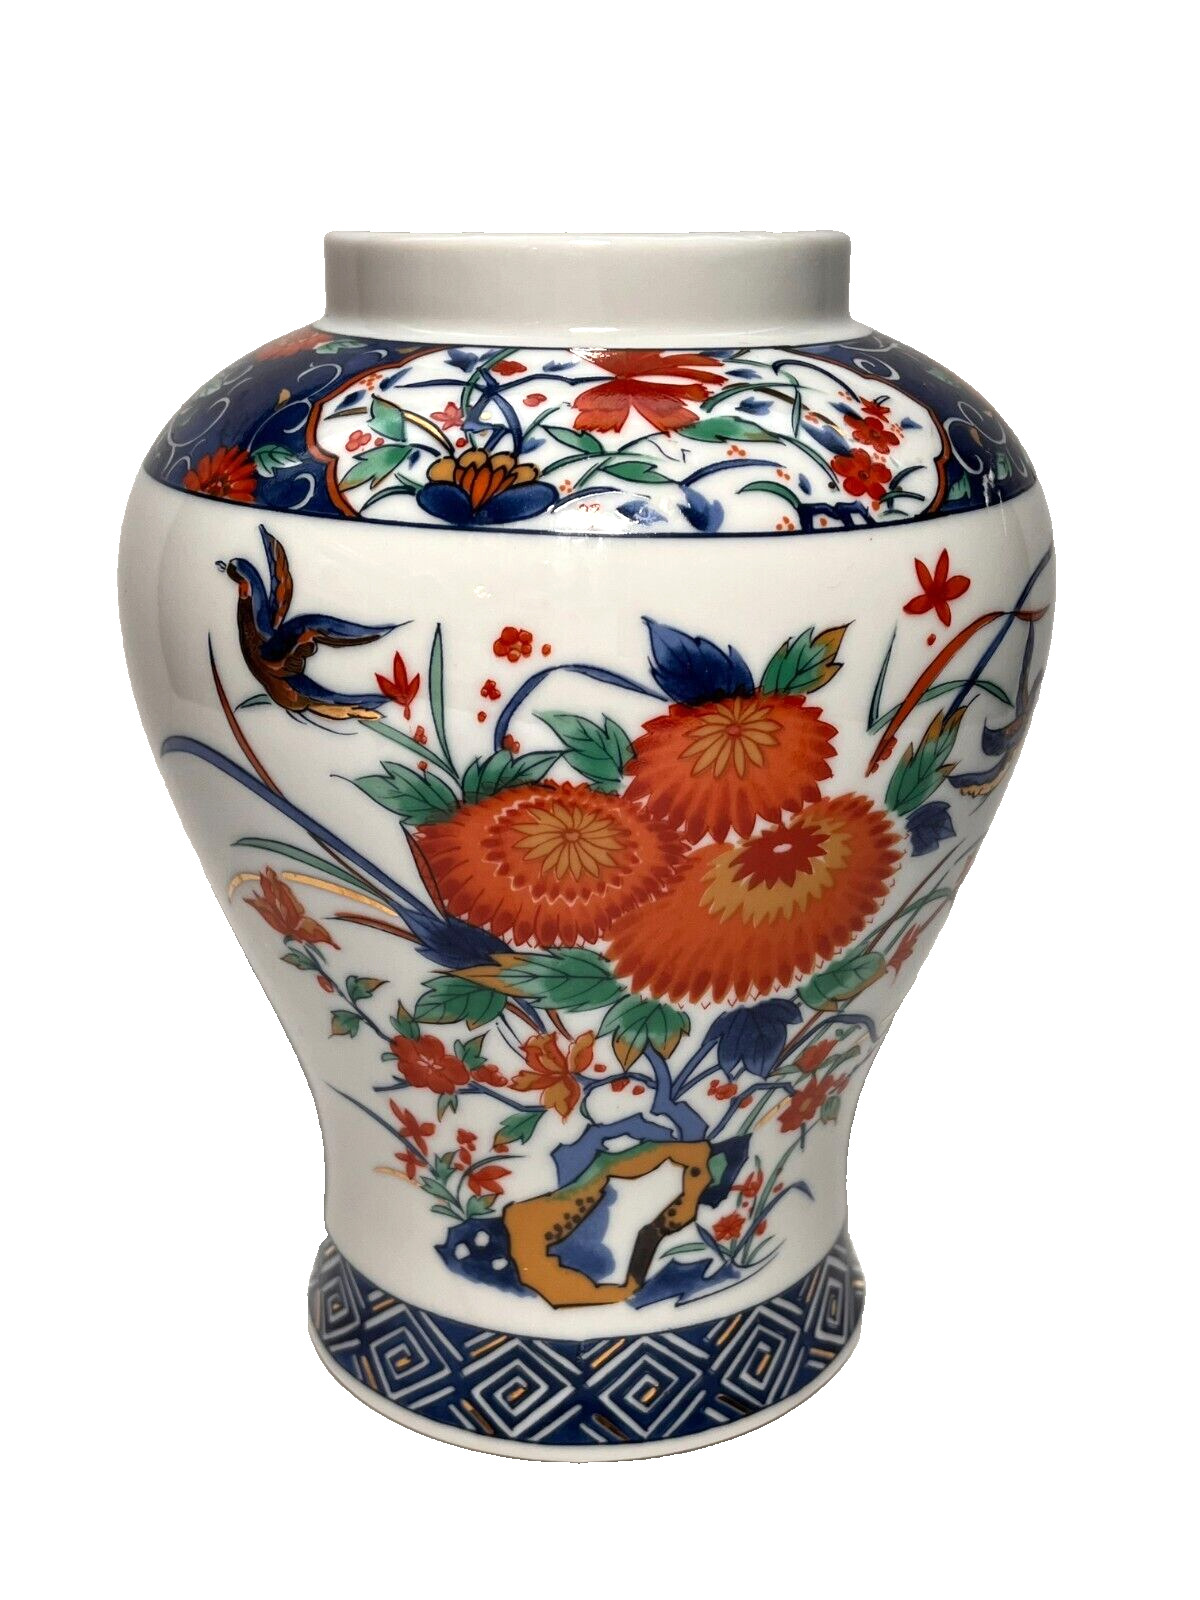 VTG Hudson’s Imari Style Flower Bird Design Porcelain Vase, Empress Garden Japan